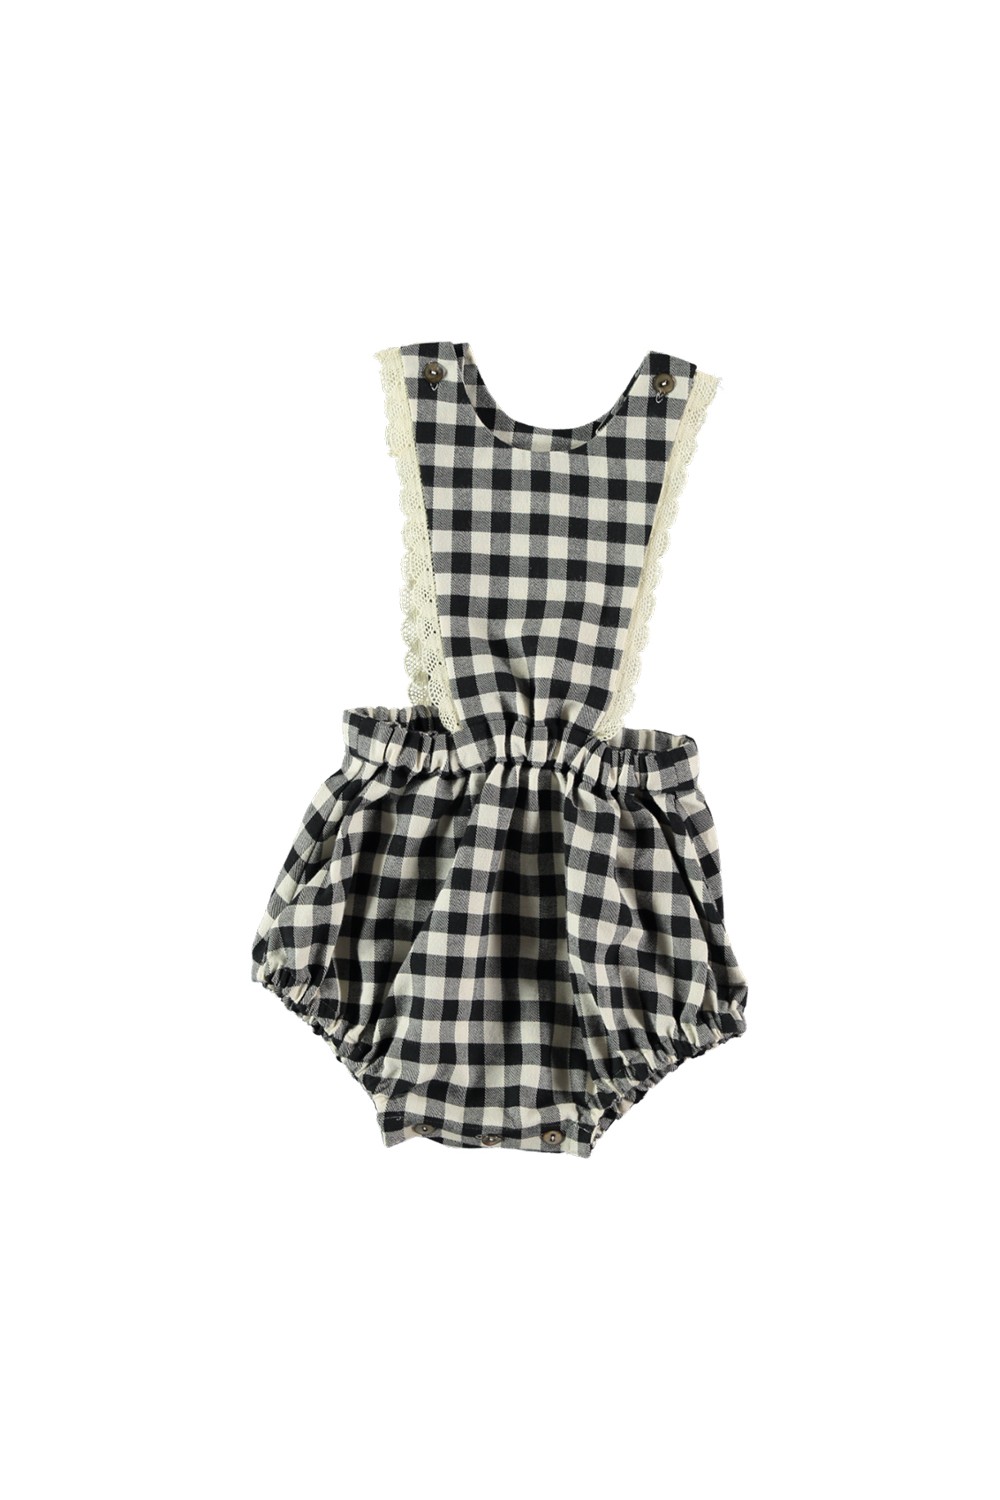 baby overalls black gingham schoolgirl organic cotton